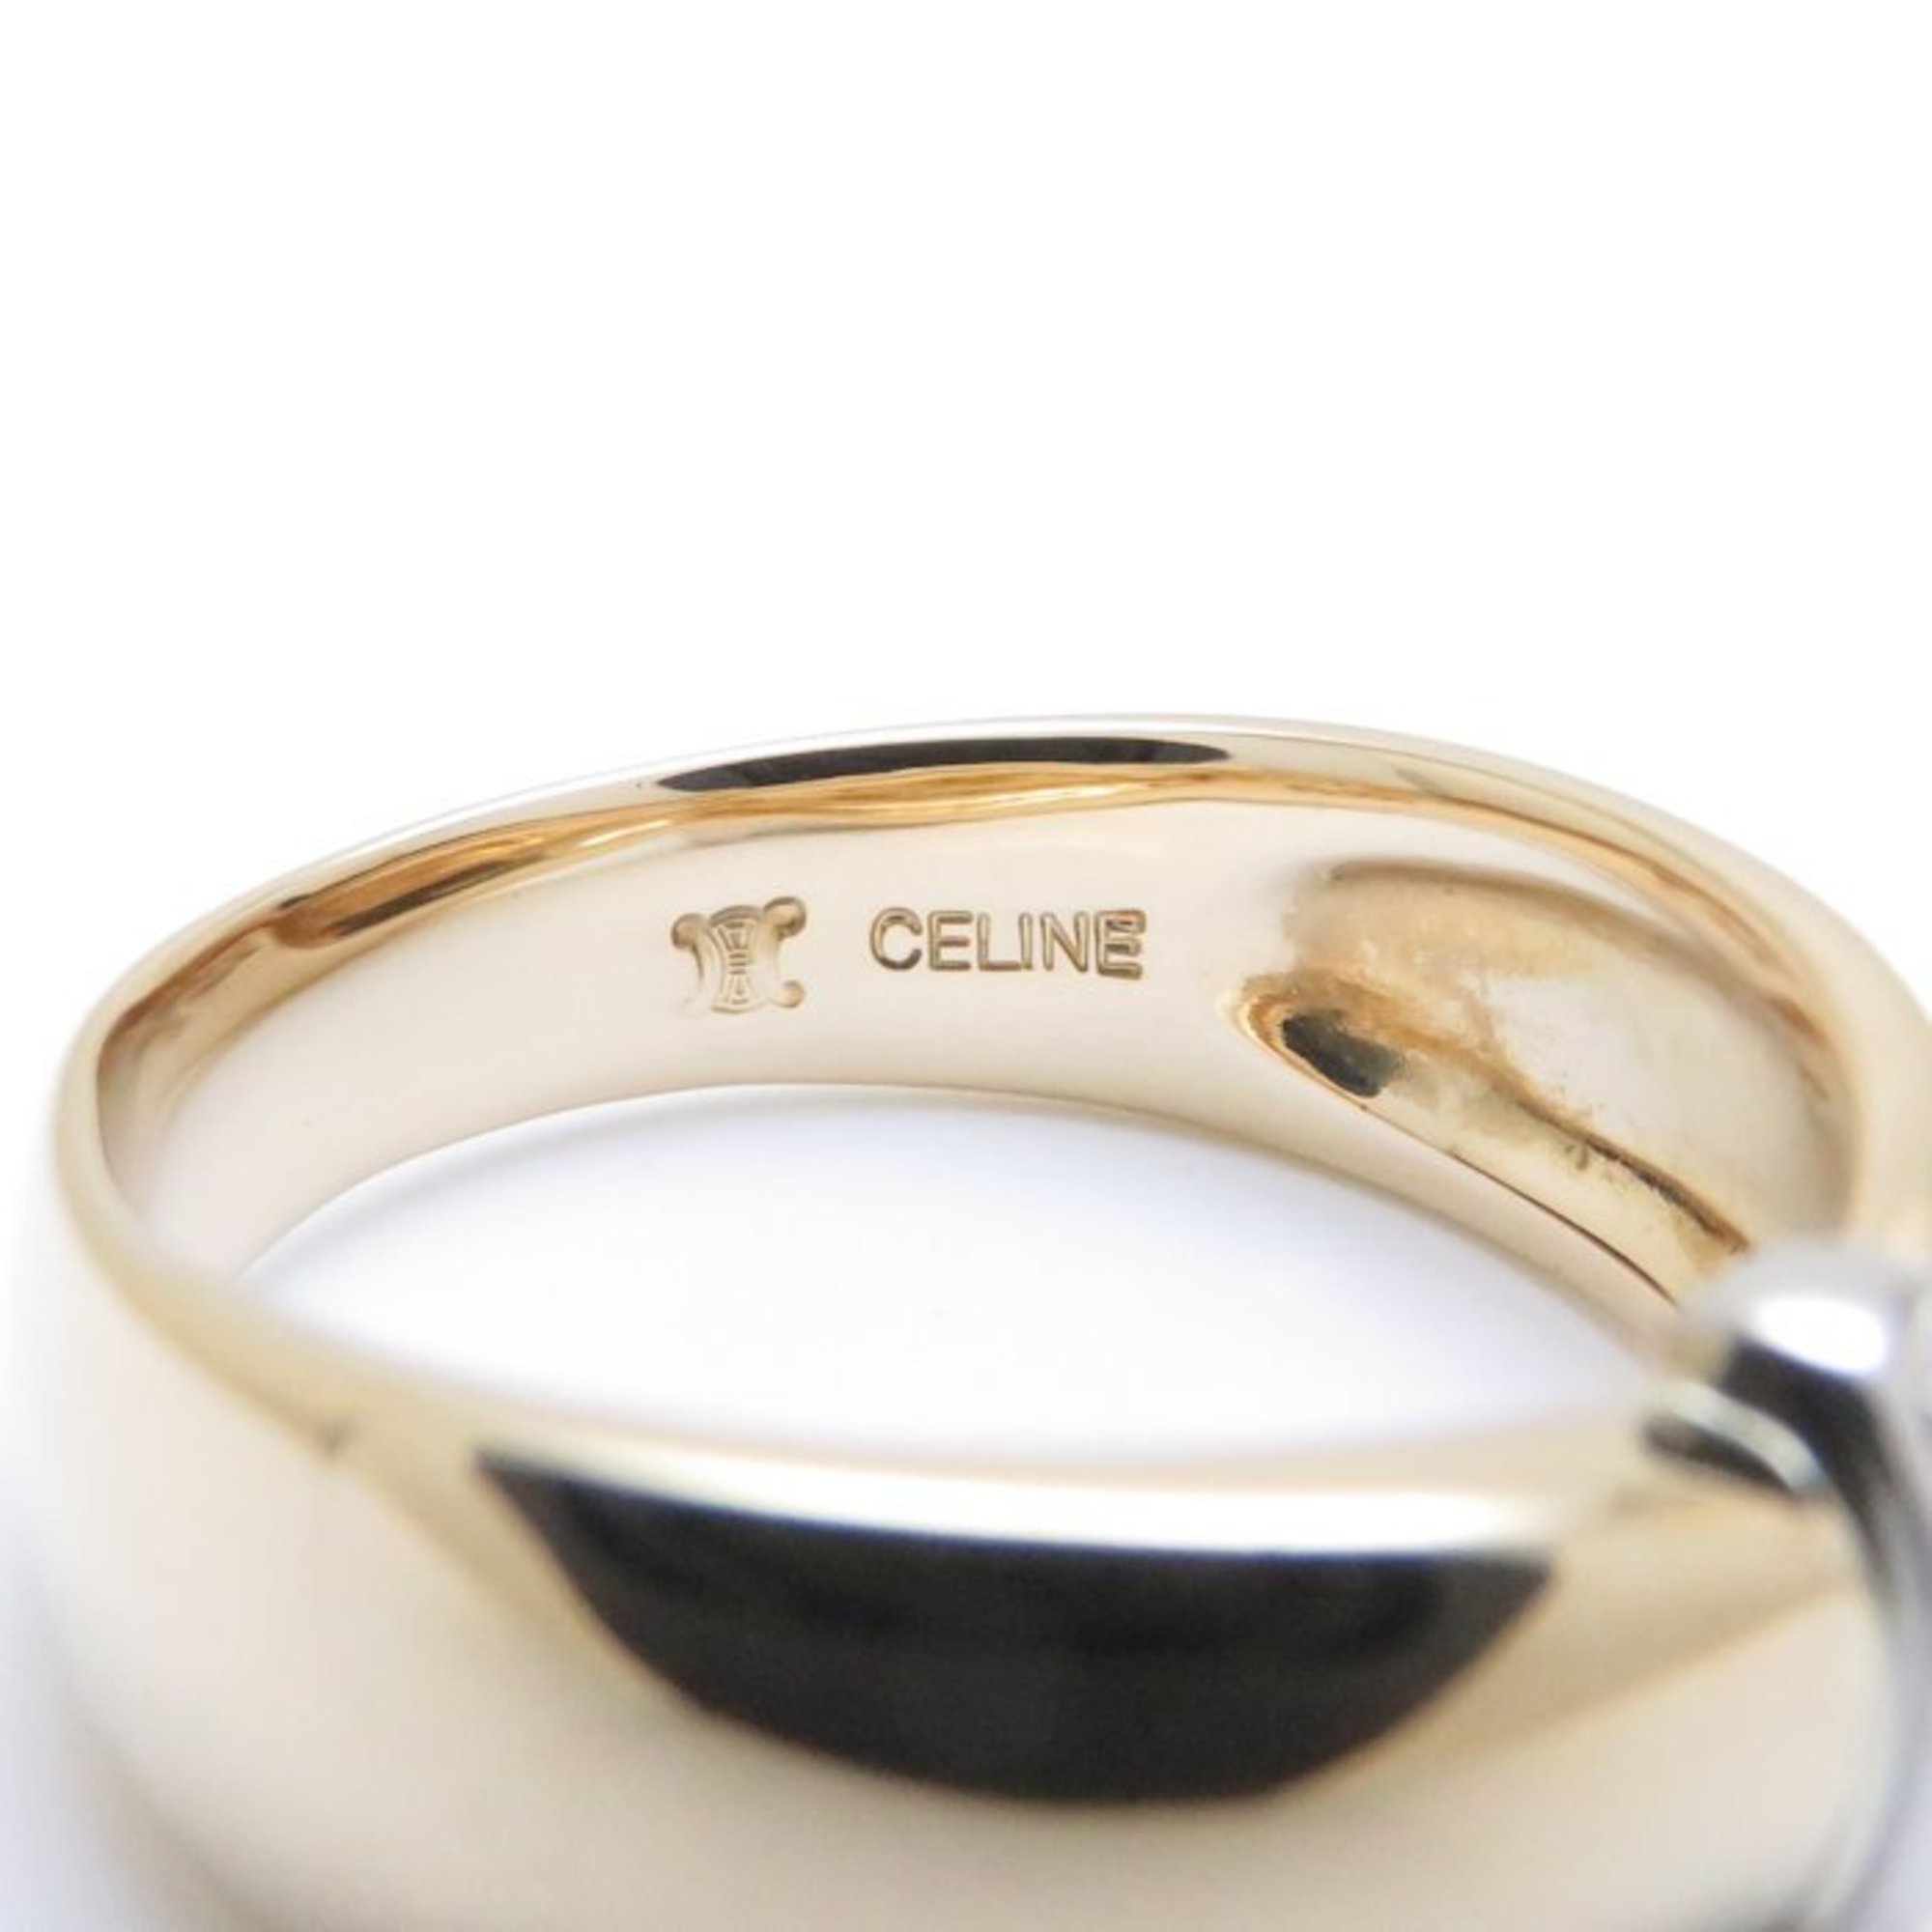 Celine CELINE logo ring combination color K18YG yellow gold × Pt900 platinum 198802